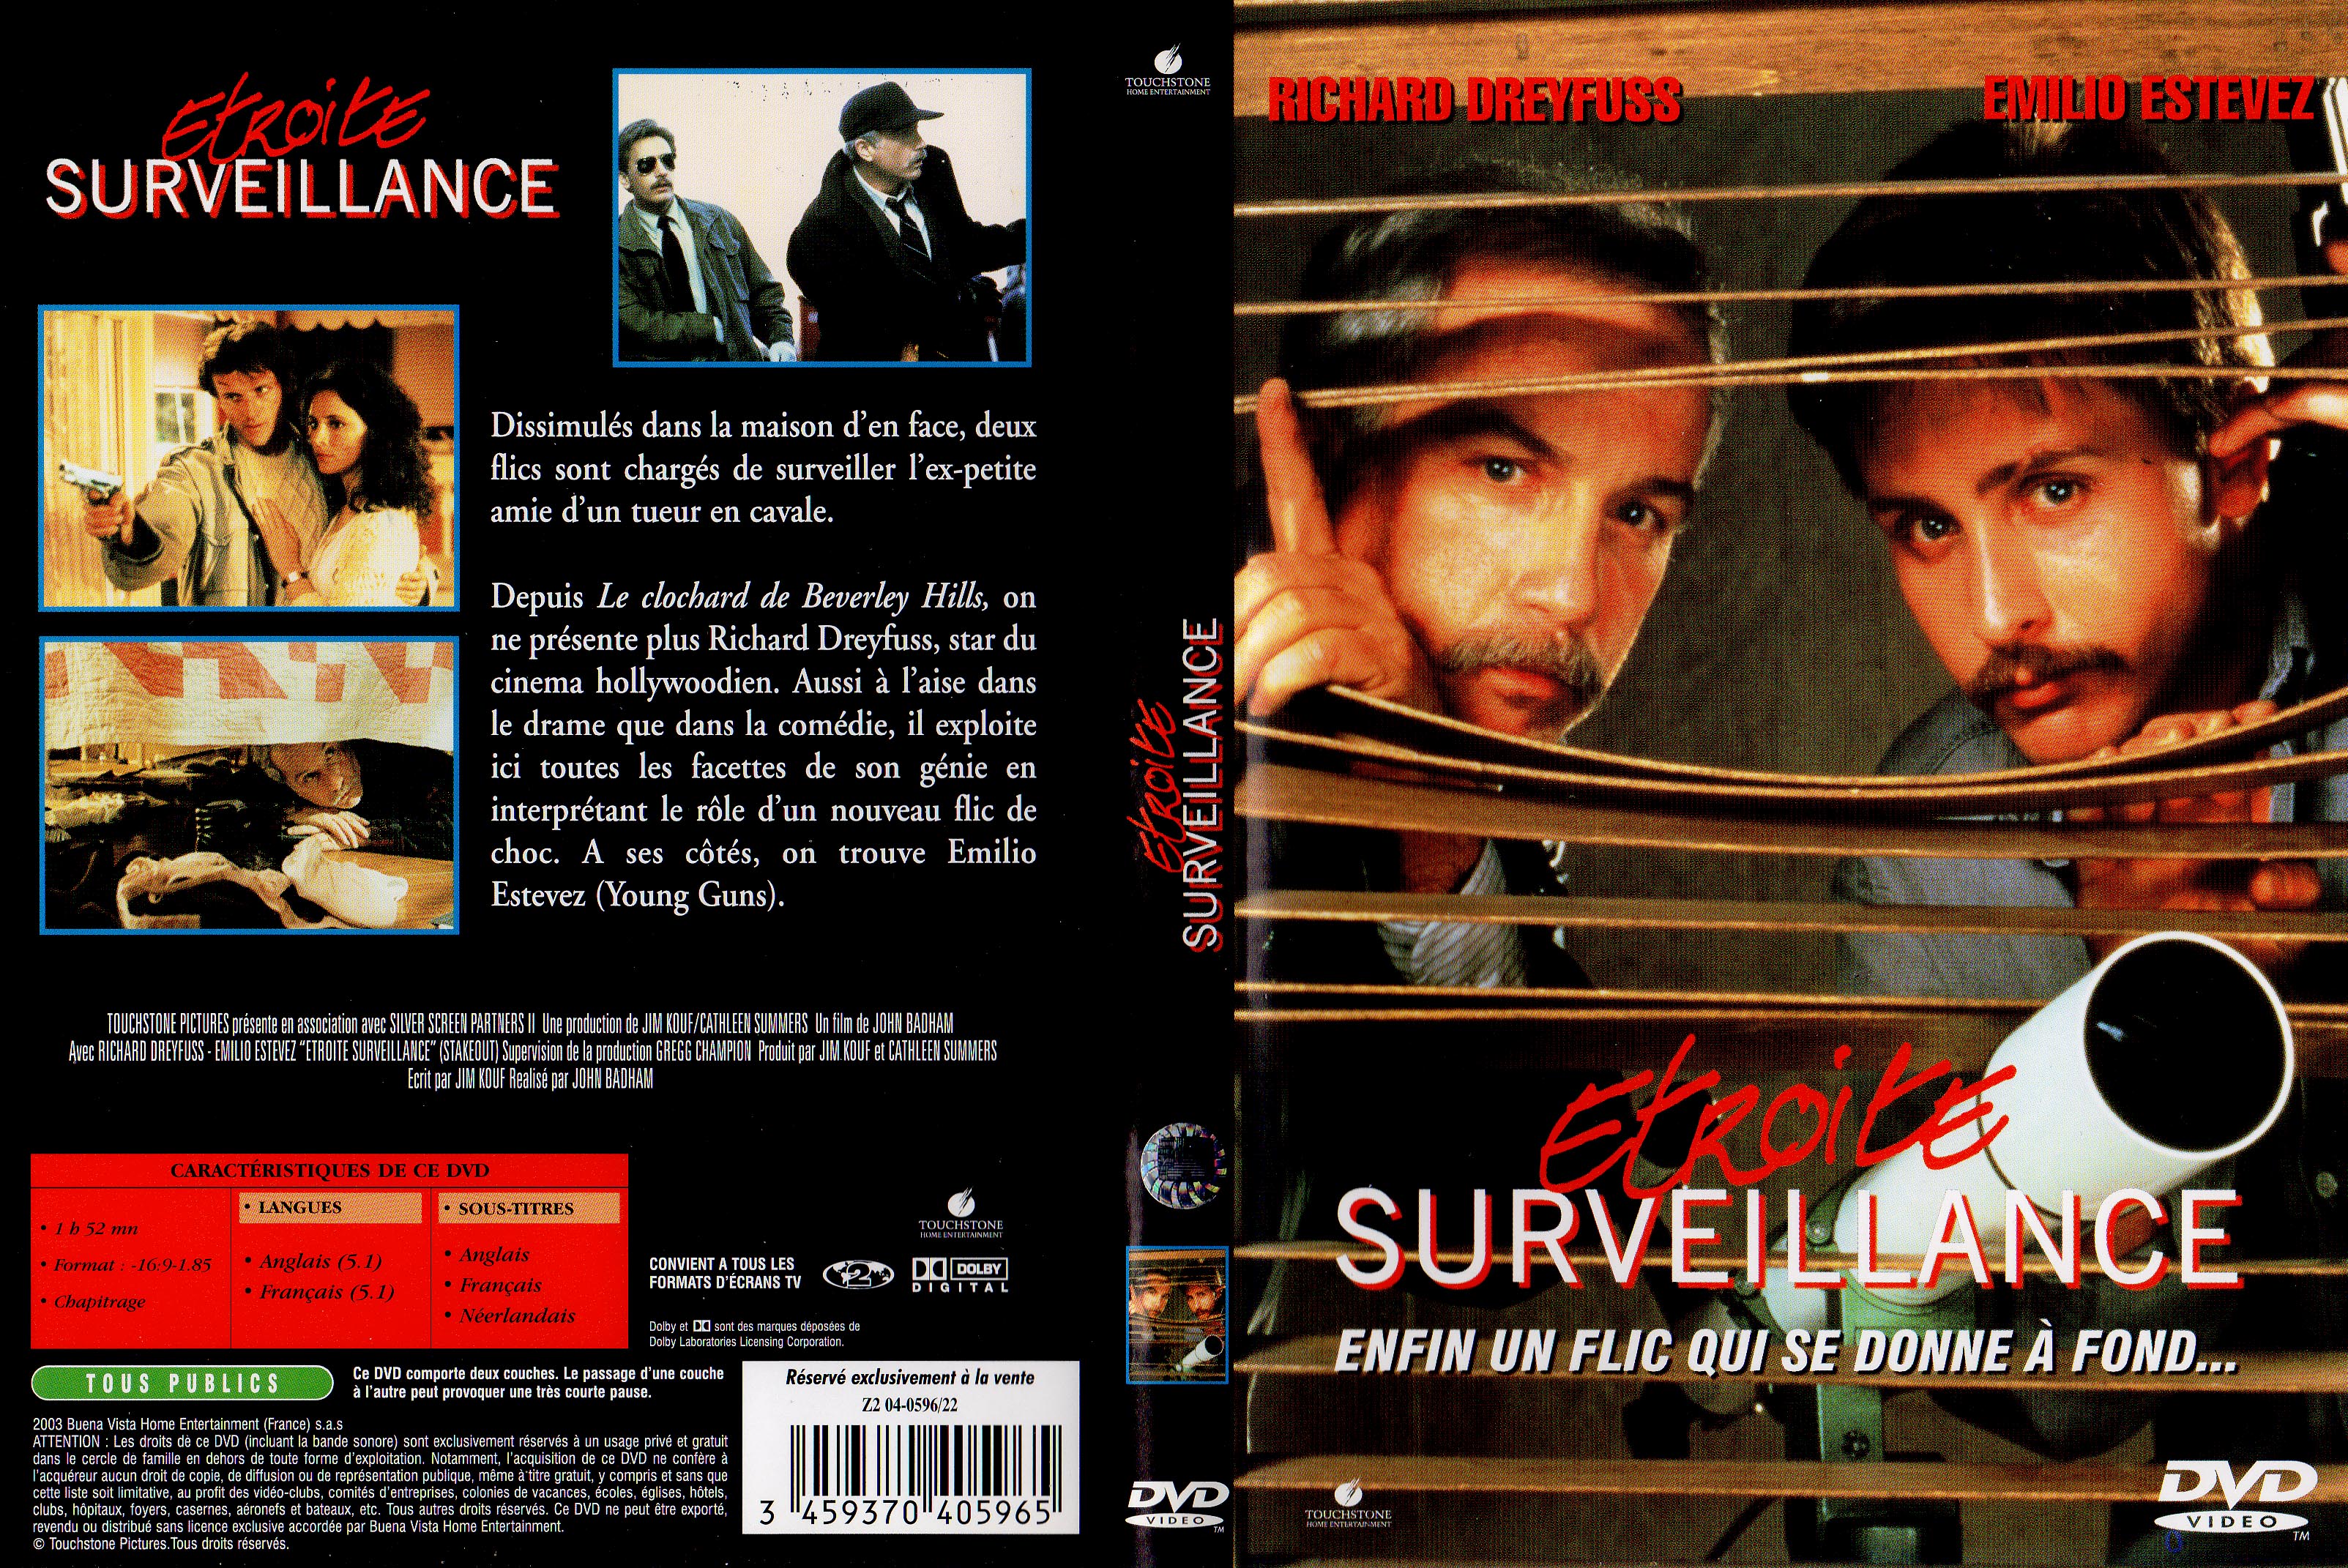 Jaquette DVD Etroite surveillance v2